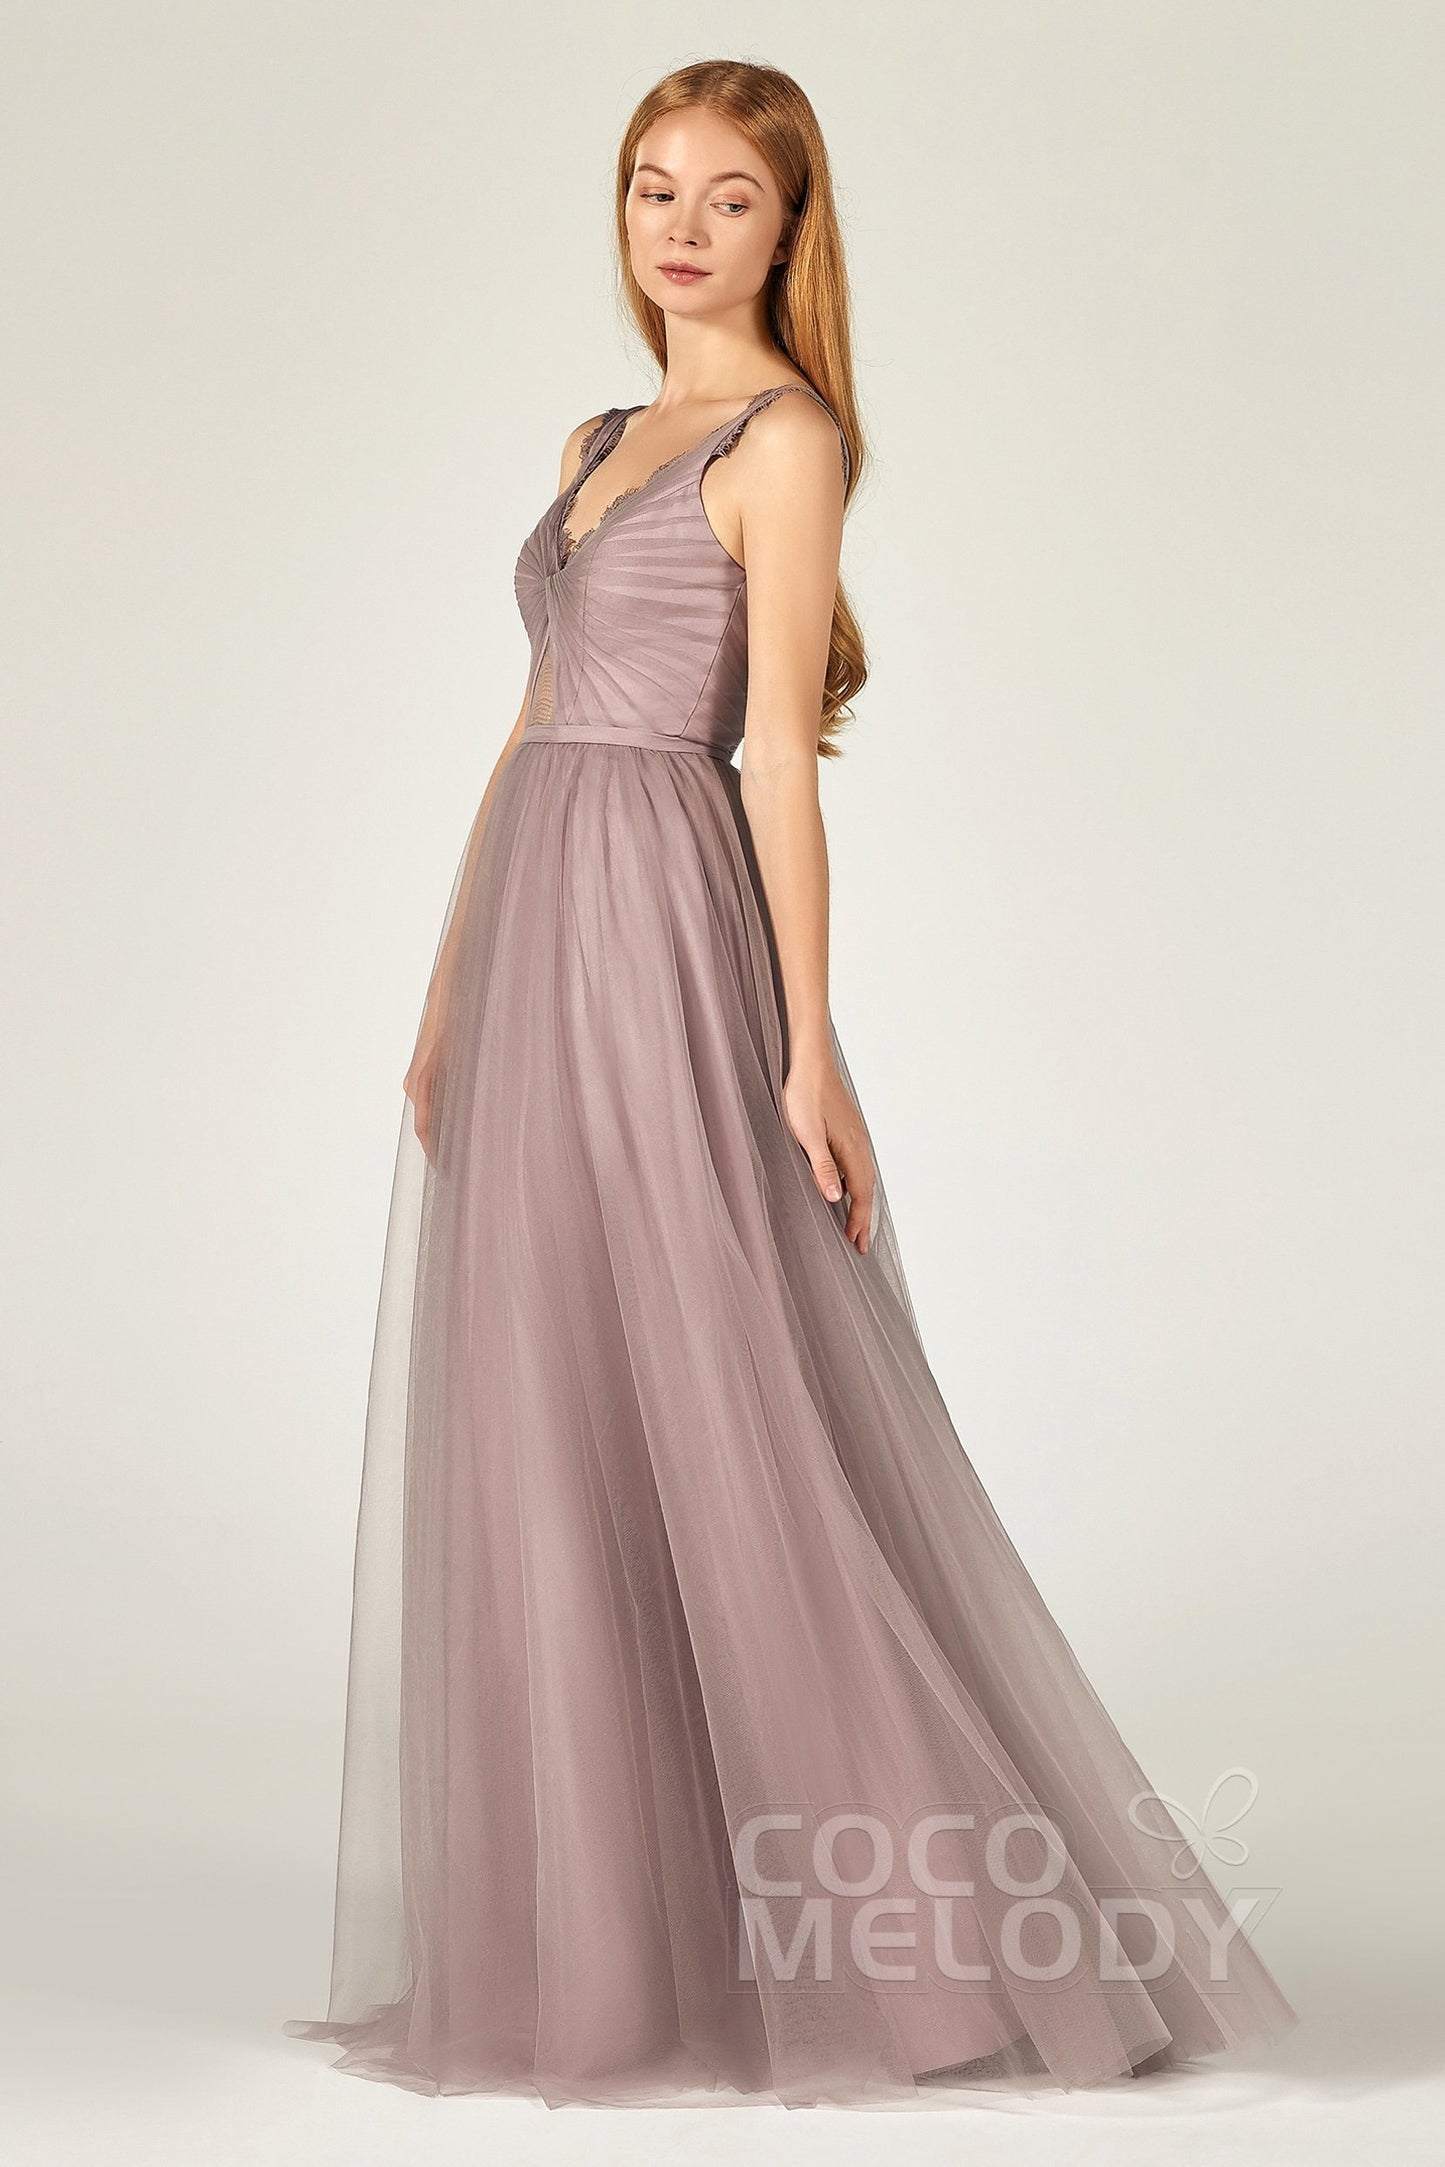 A-Line Floor Length Tulle Bridesmaid Dress CB0380